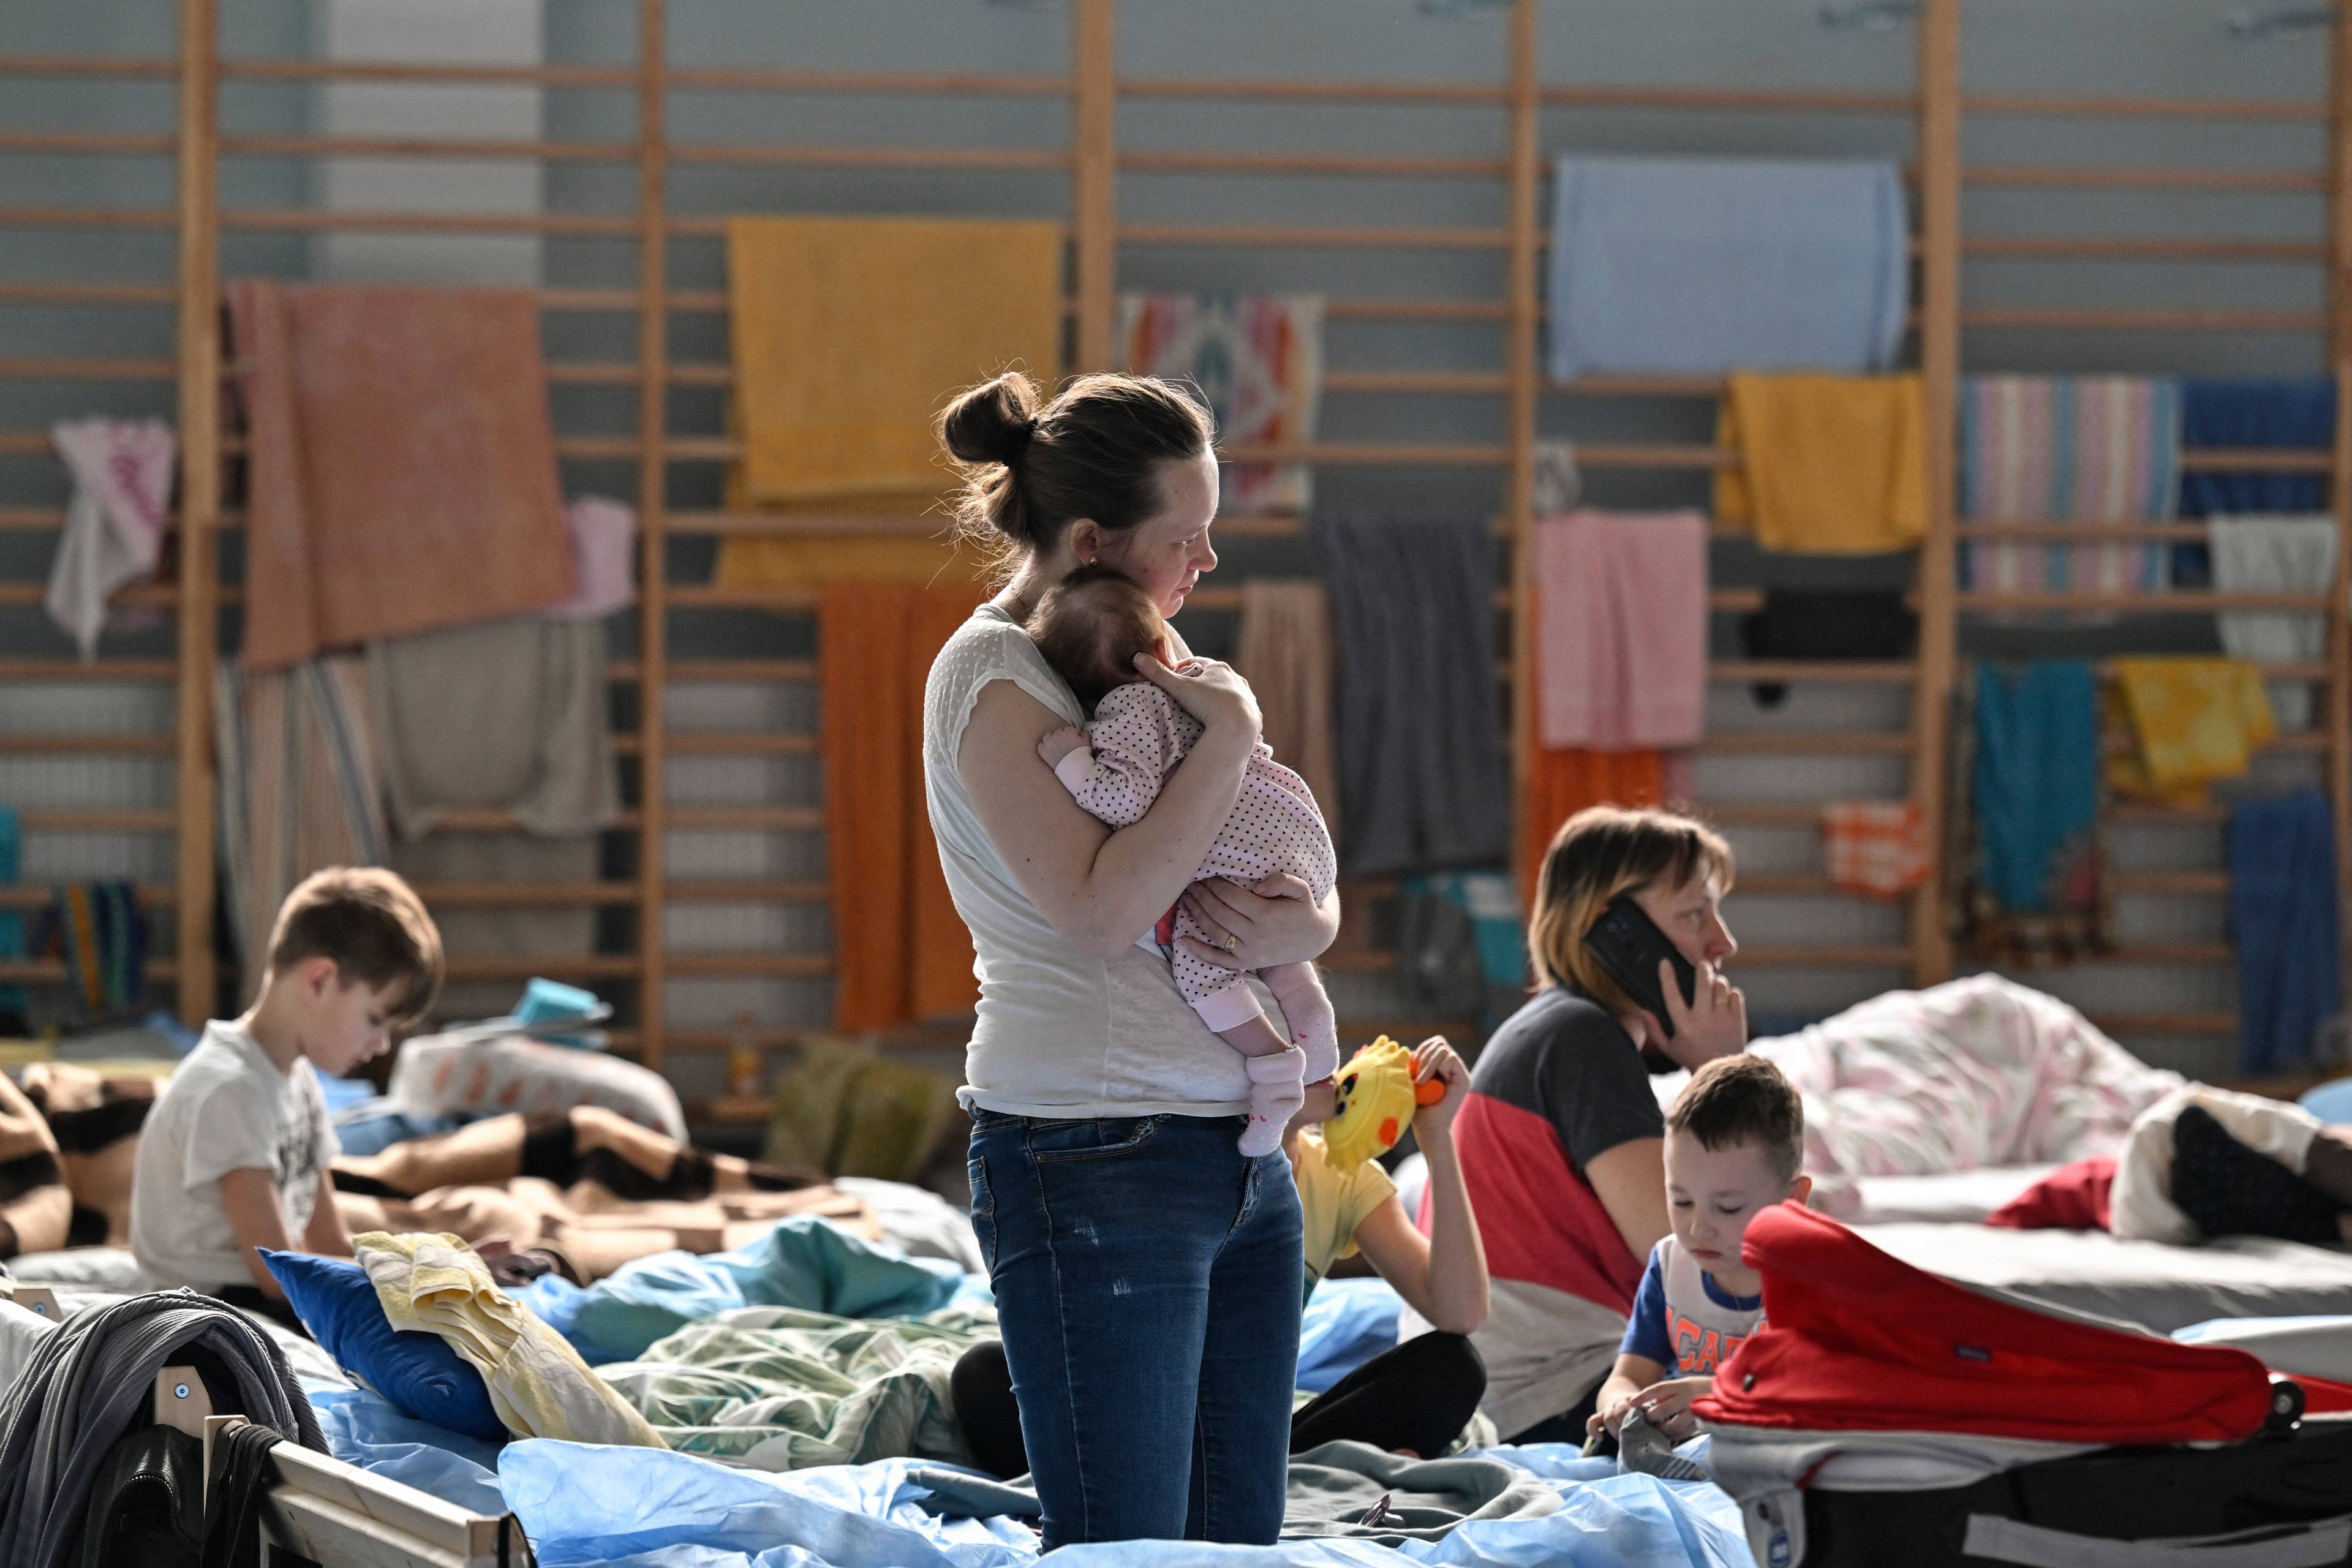 Kobieta trzyma na rekach niemowlaka, w tle łóżka, na których siedzą inne kobiety